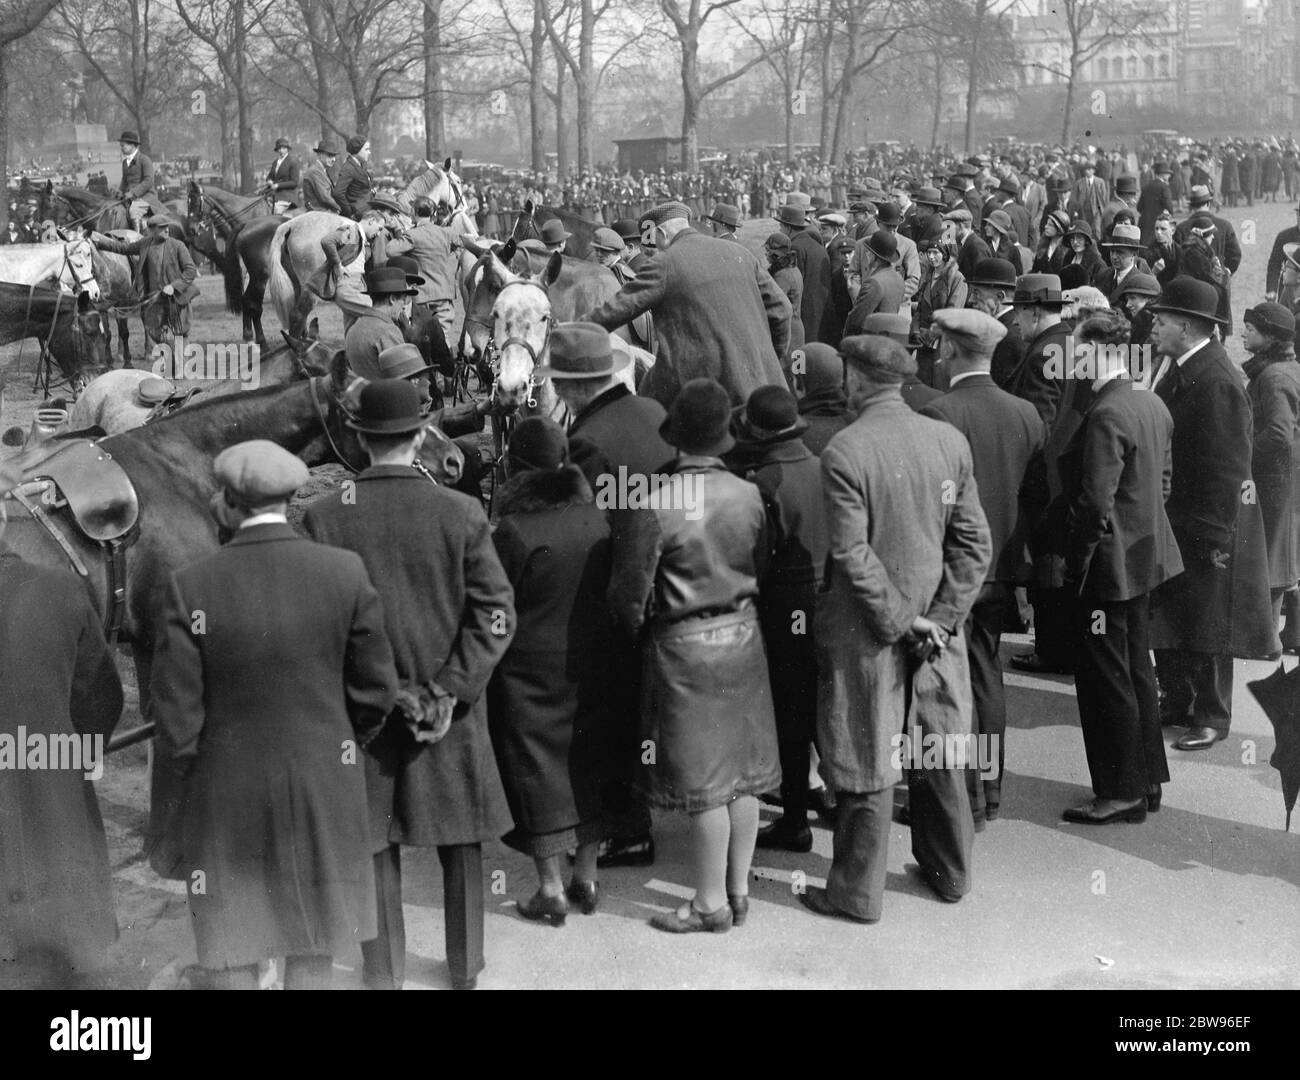 Große Menschenmengen genießen Frühlingssonne im Park. Eine ungewöhnlich große Menge war im Hyde Park London, um den Sonnenschein des ersten Frühlings Sonntag des Jahres zu genießen. Beobachten Reiter ihre Pferde nach dem Reiten in der Reihe absatteln. 20 März 1932 . Stockfoto